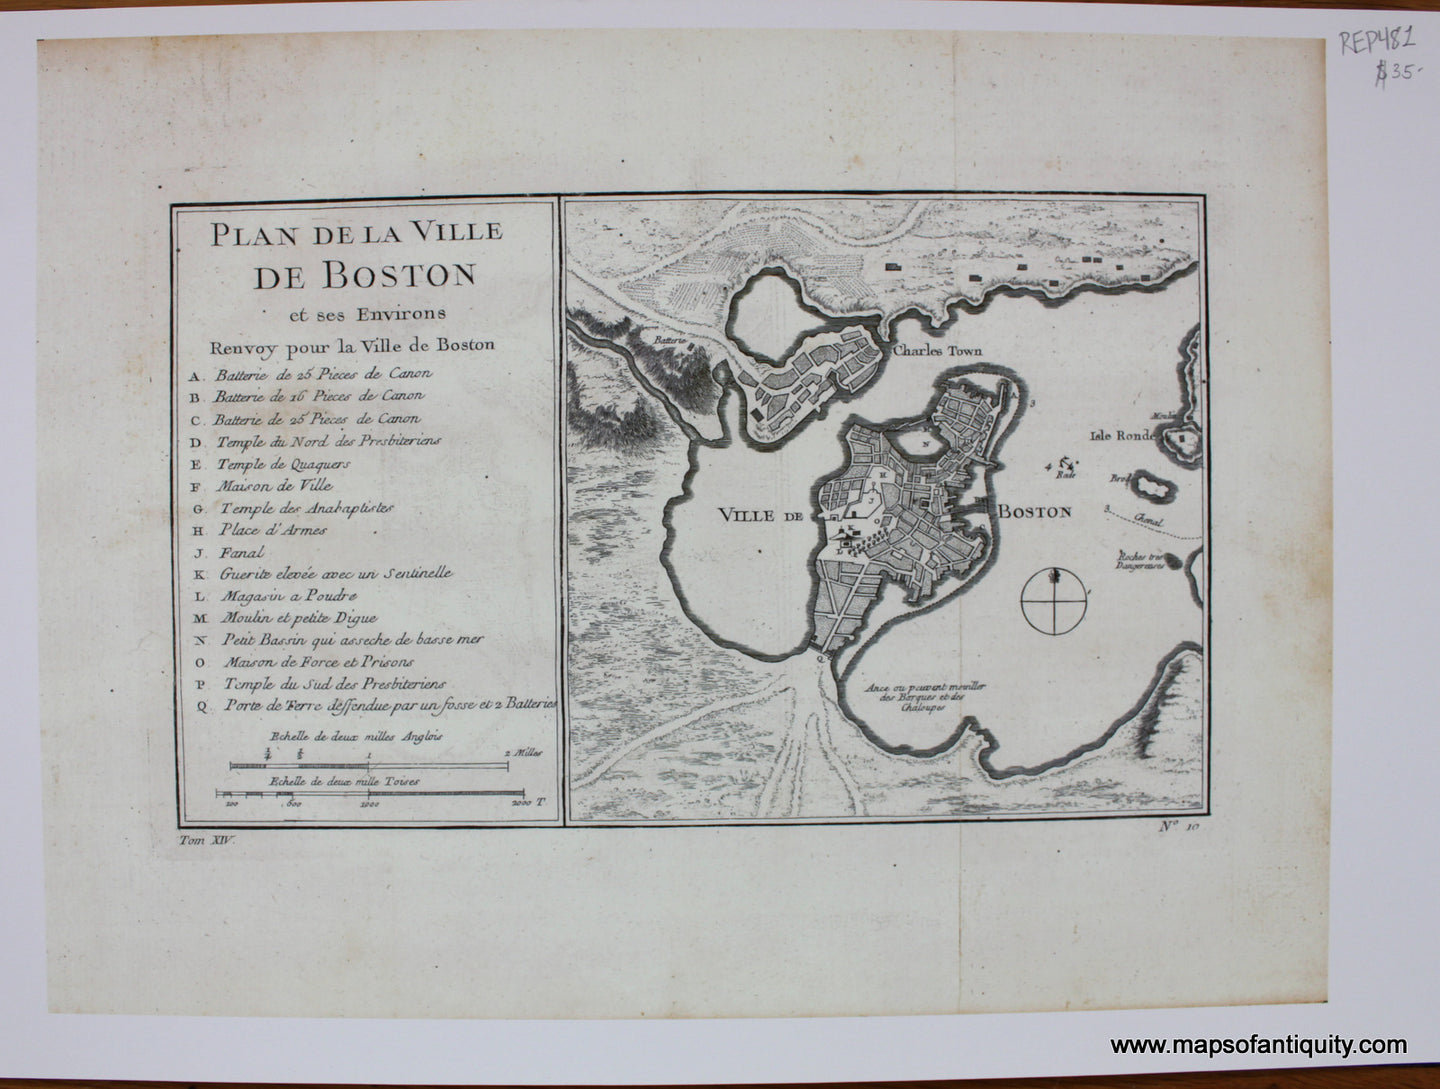 Print-Prints-Reproduction-Reproductions-Plan-de-la-Ville-De-Boston-et-ses-Environs-Bellin-1757-City-Massachusetts-Mass-MA-Before-the-Fill-Maps-of-Antiquity